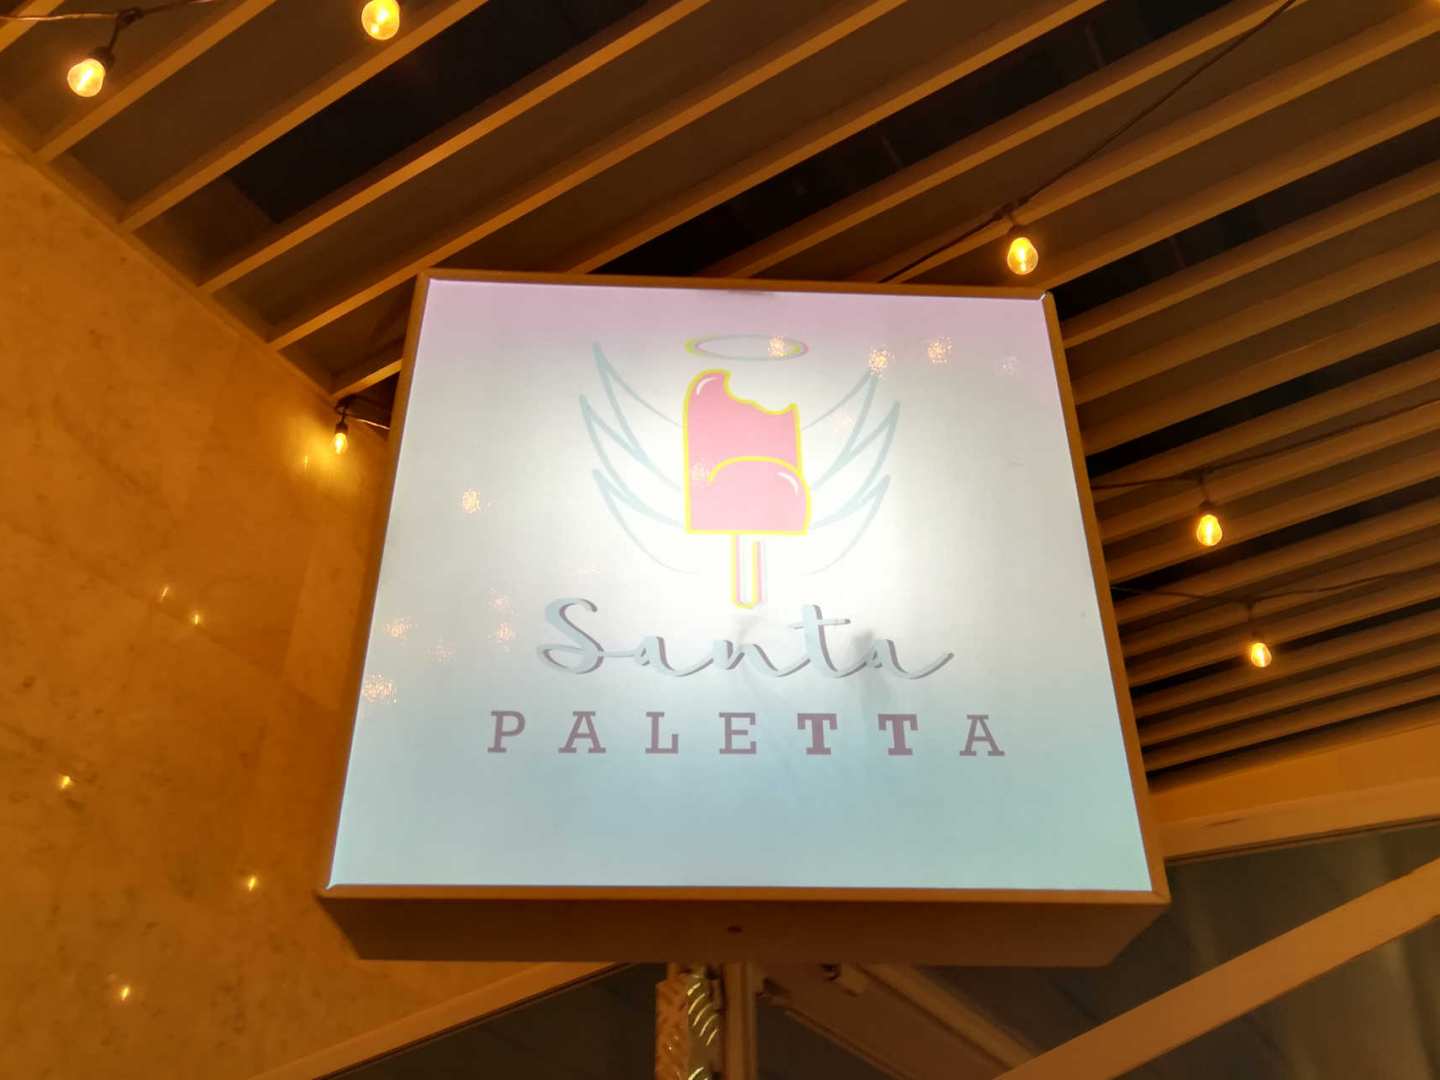 Santa Paletta